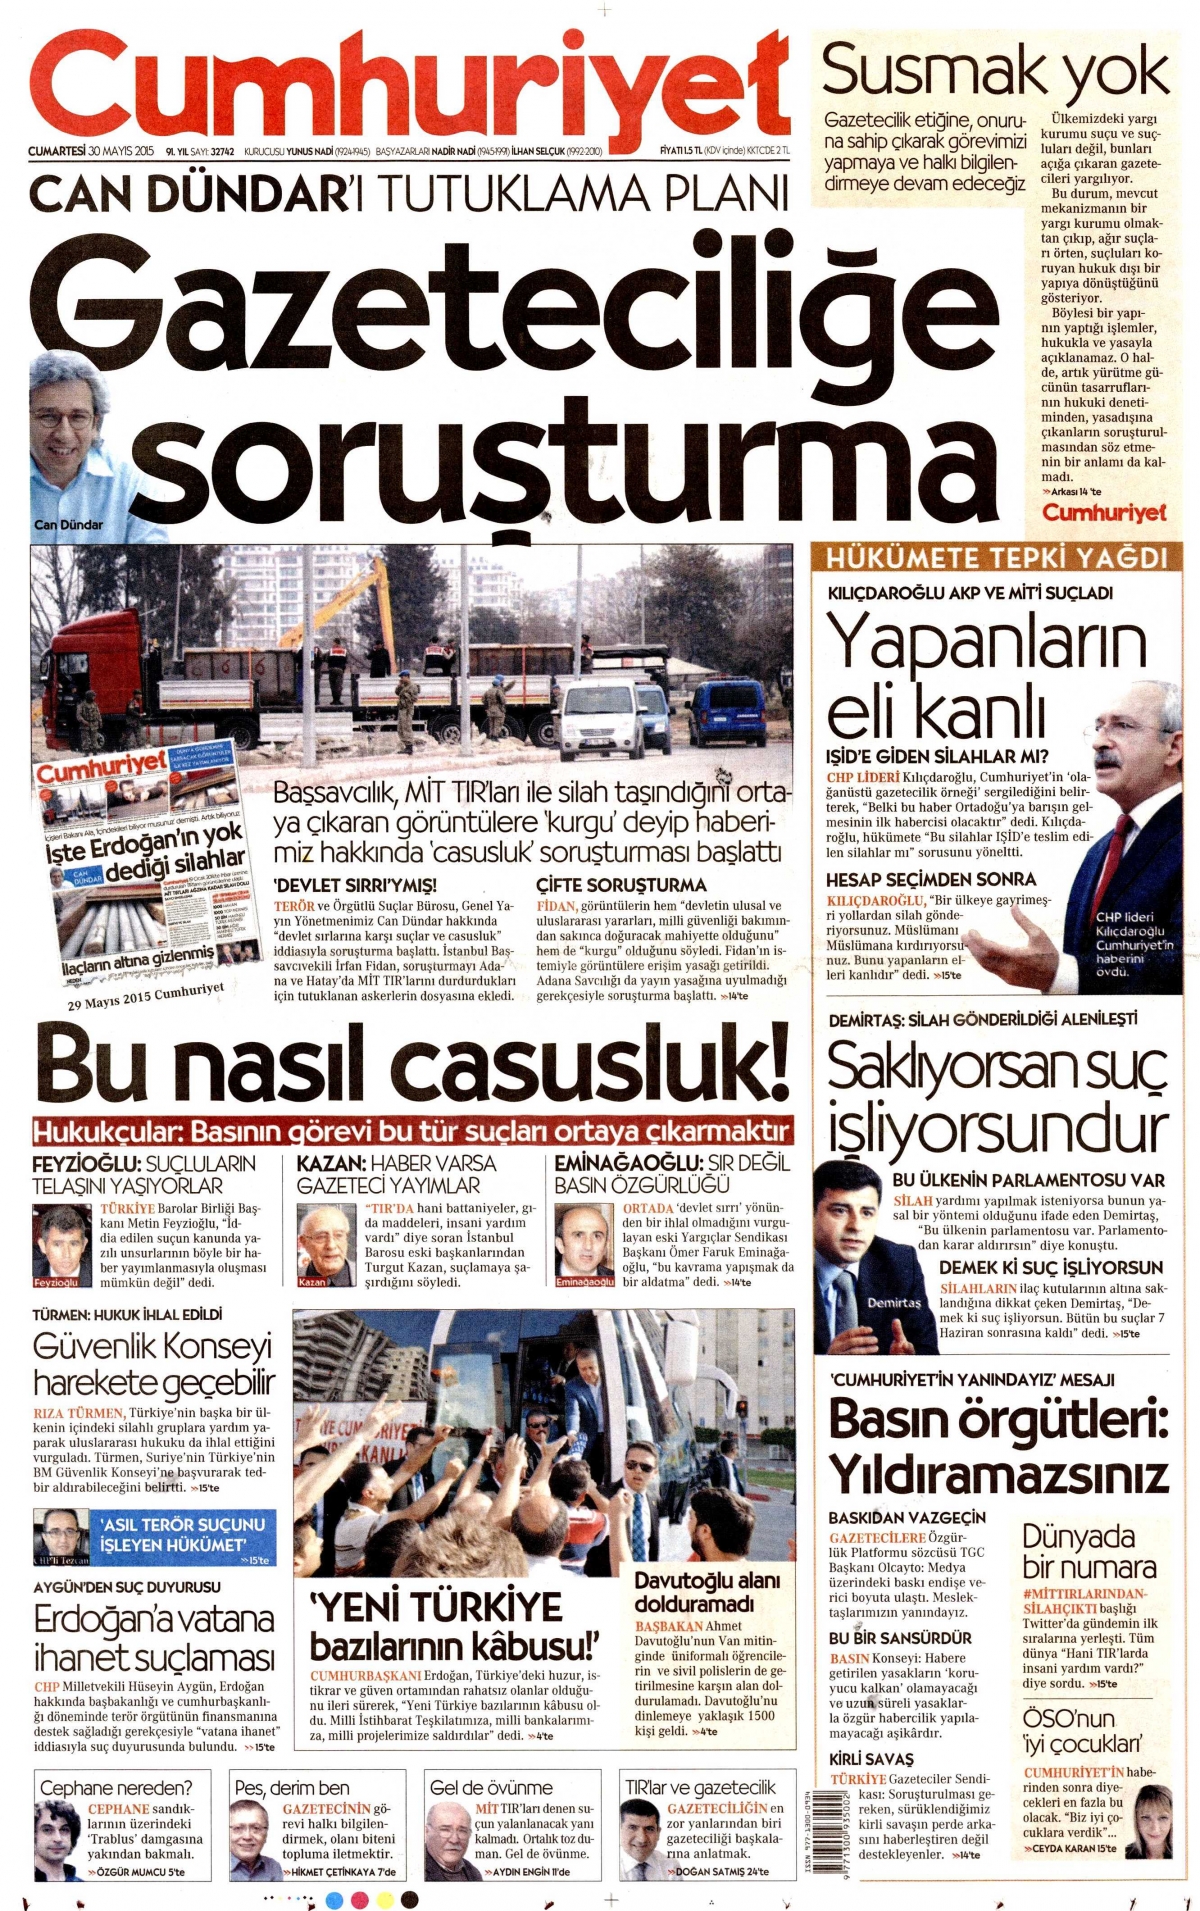 Cumhuriyet'in 30 Mayıs tarihli birinci sayfası.